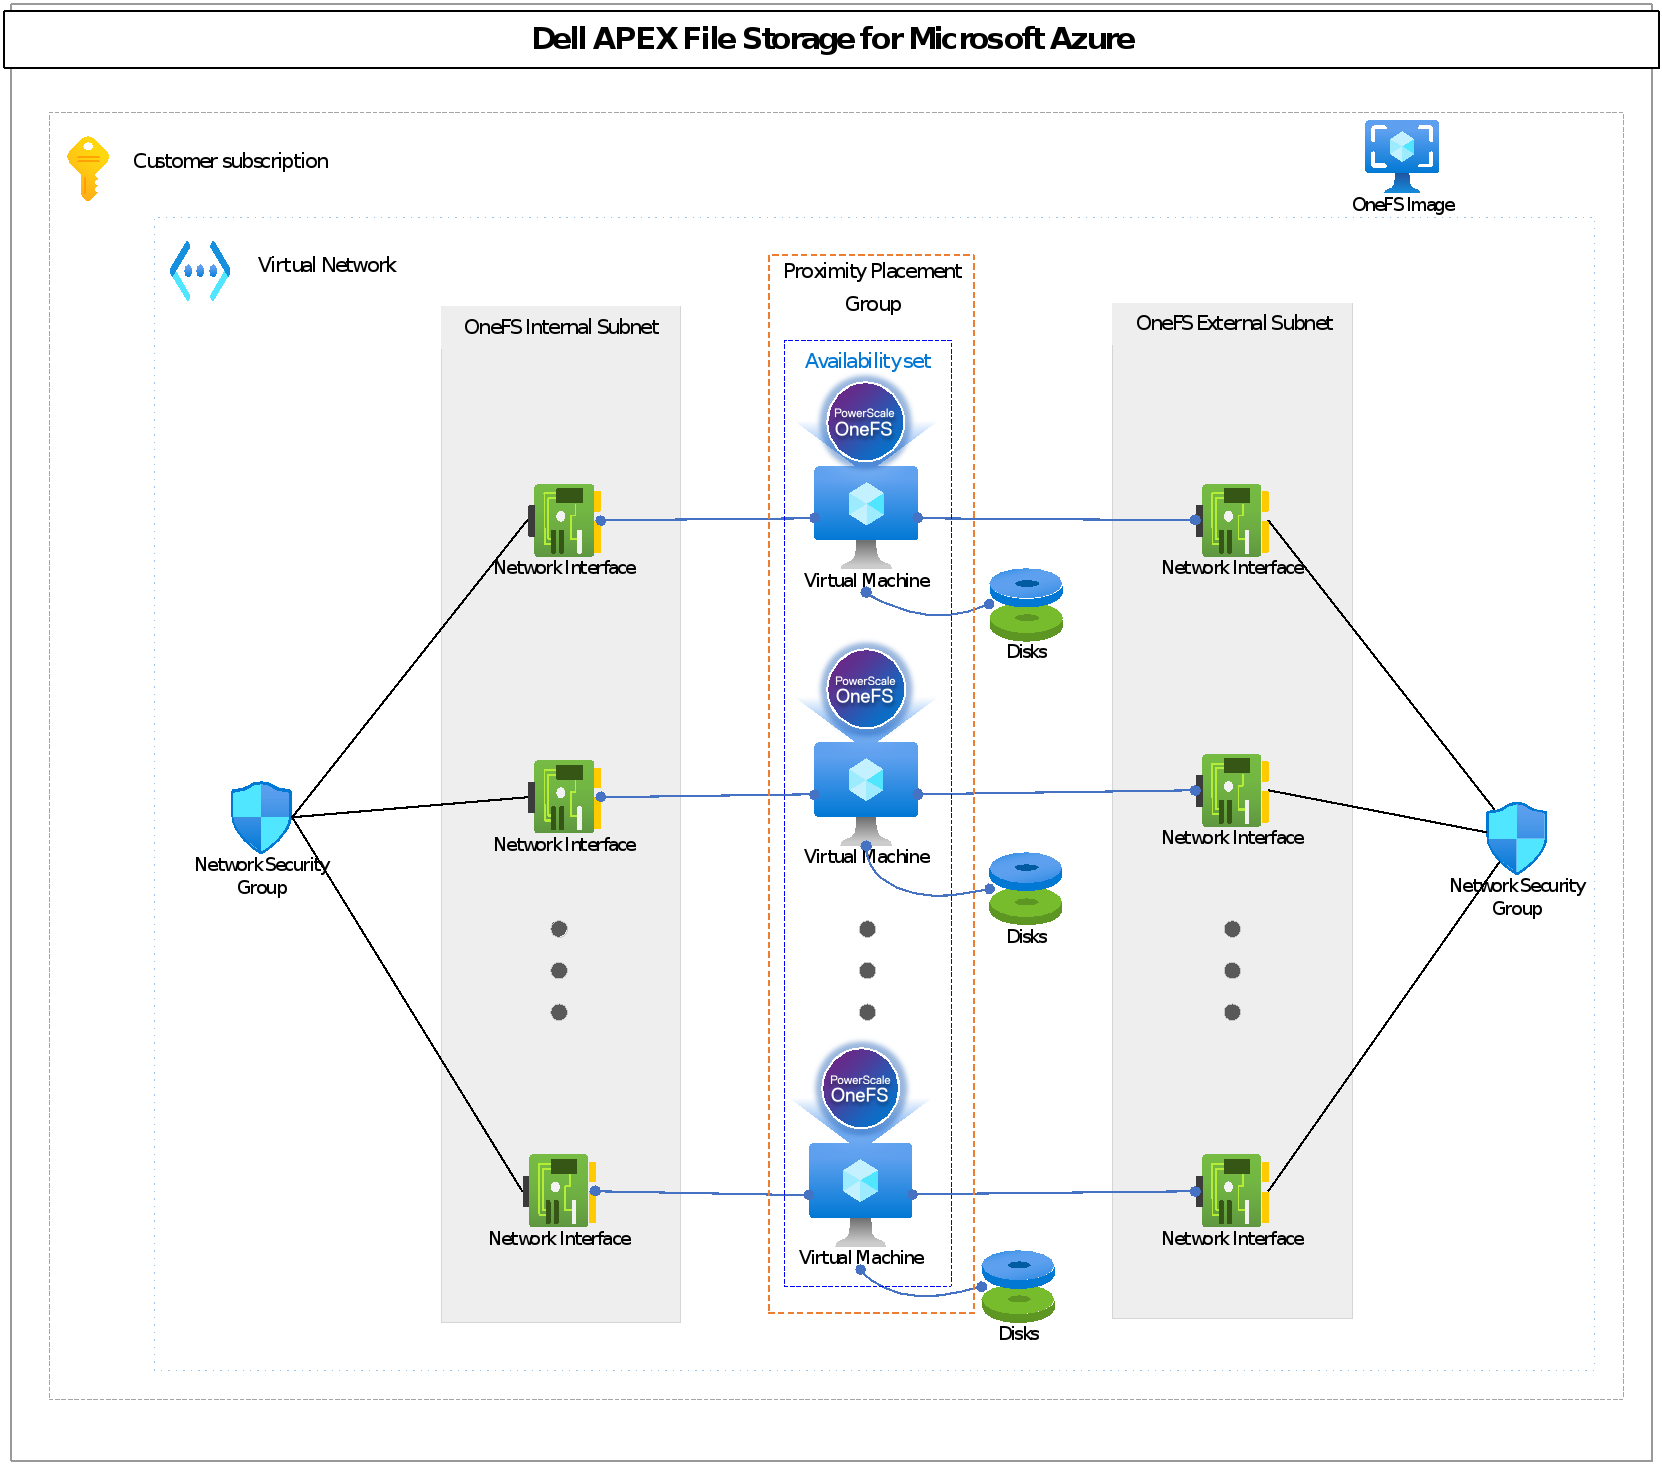 APEX File Storage for Azure architecture